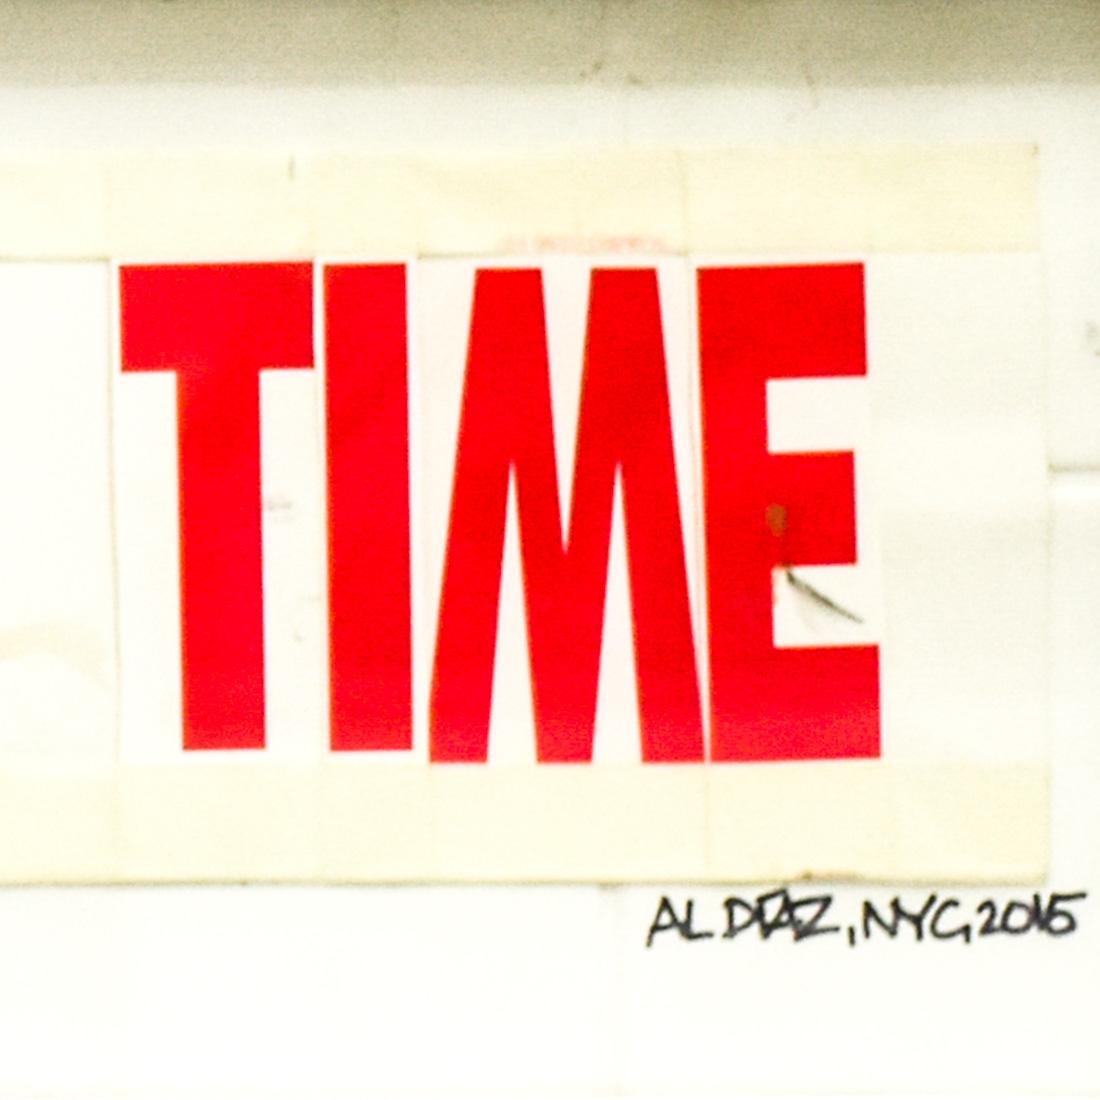 Erstaunliches doppelseitiges Original-Kunstwerk von Al Diaz.
Al Diaz ist auch dafür bekannt, dass er zusammen mit Jean Michel Basquiat die andere Hälfte des SAMO©-Duos der 70er und 80er Jahre war.
Eine Seite enthält einen nachdenklich stimmenden